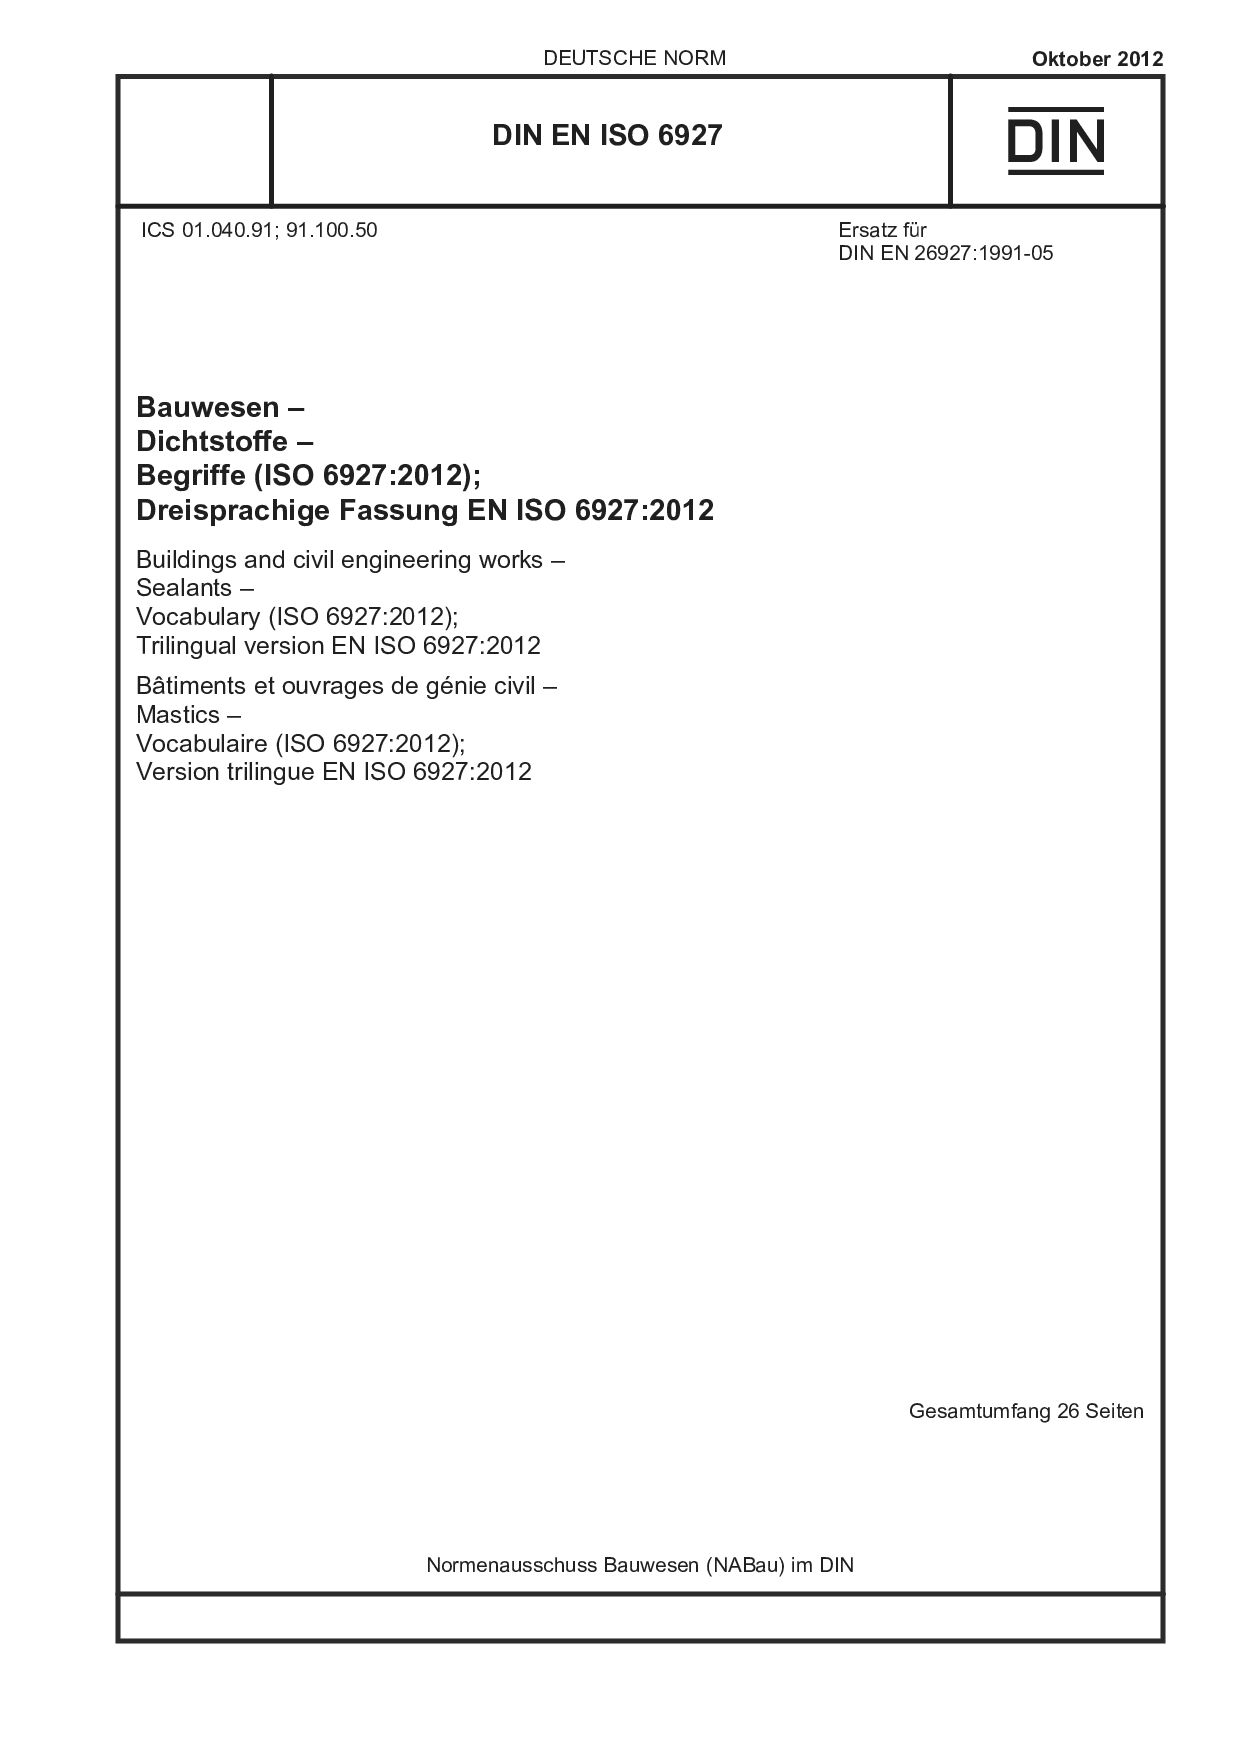 DIN EN ISO 6927:2012